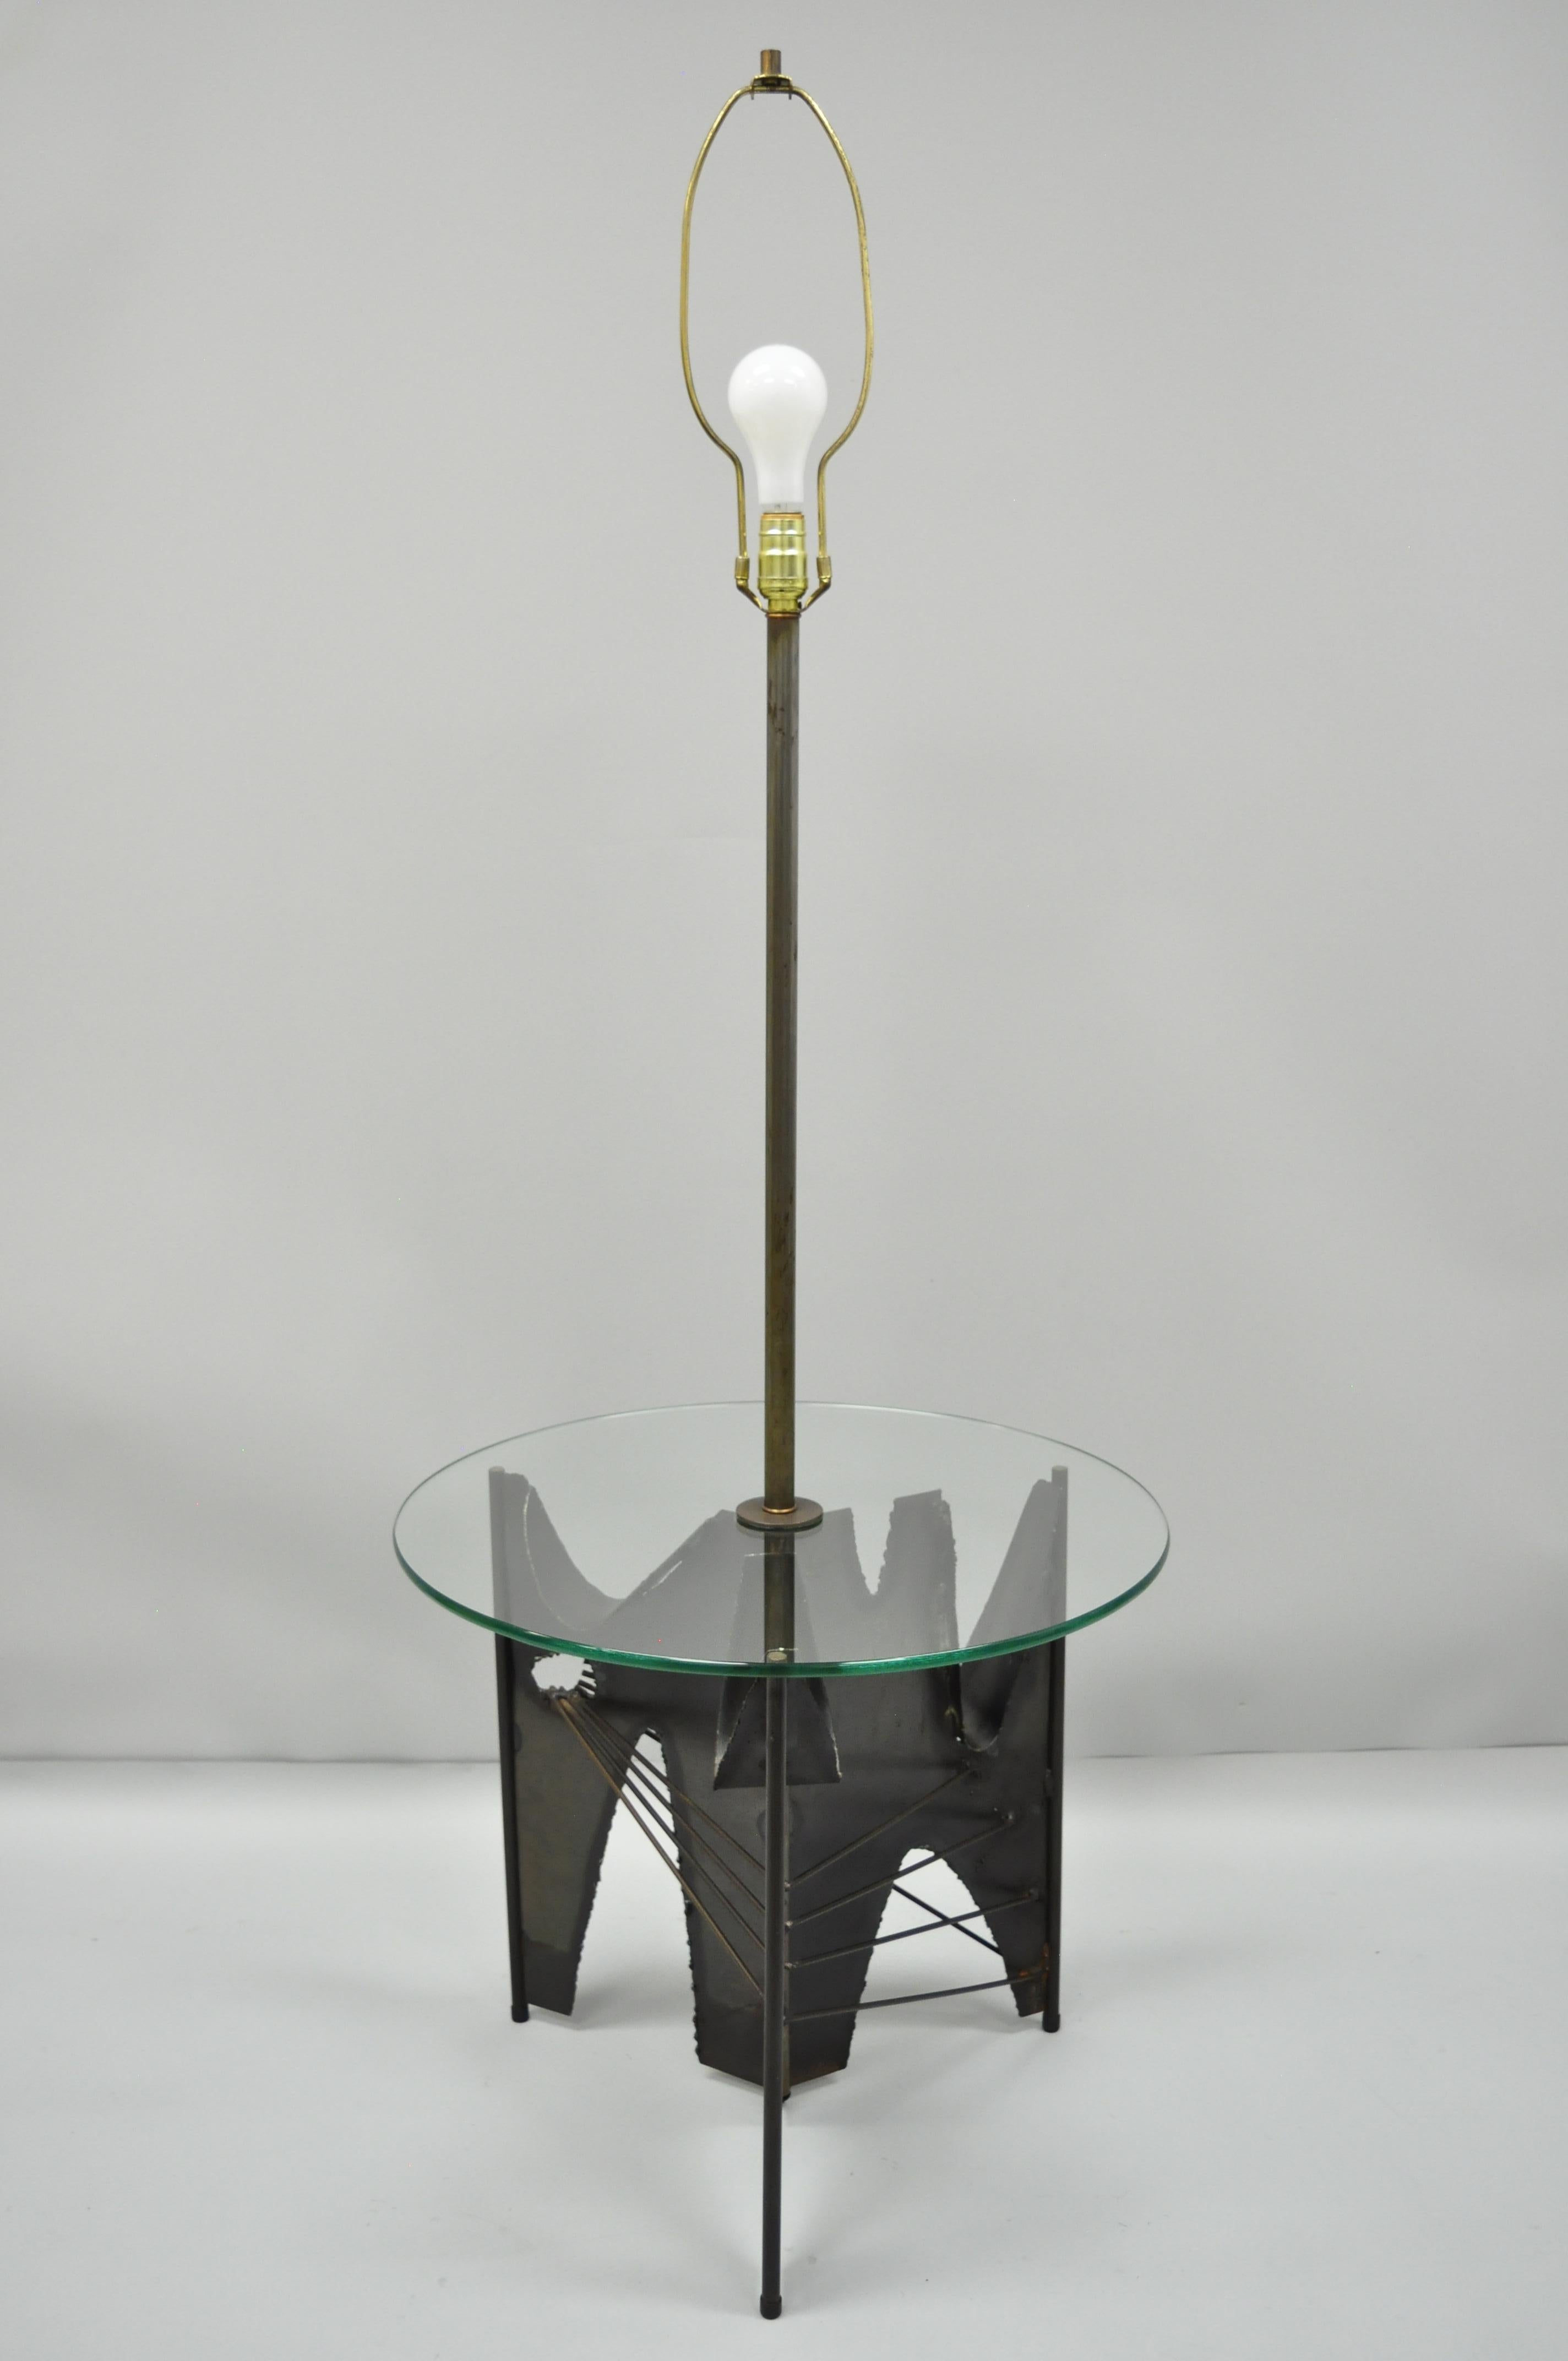 Vintage Mid-Century Modern Harry Balmer for Laurel Brutalist floor lamp lamp side table. Cet objet comporte un interrupteur à trois voies, une base tripode en métal de style brutaliste, une surface ronde en verre, un style et une forme remarquables,